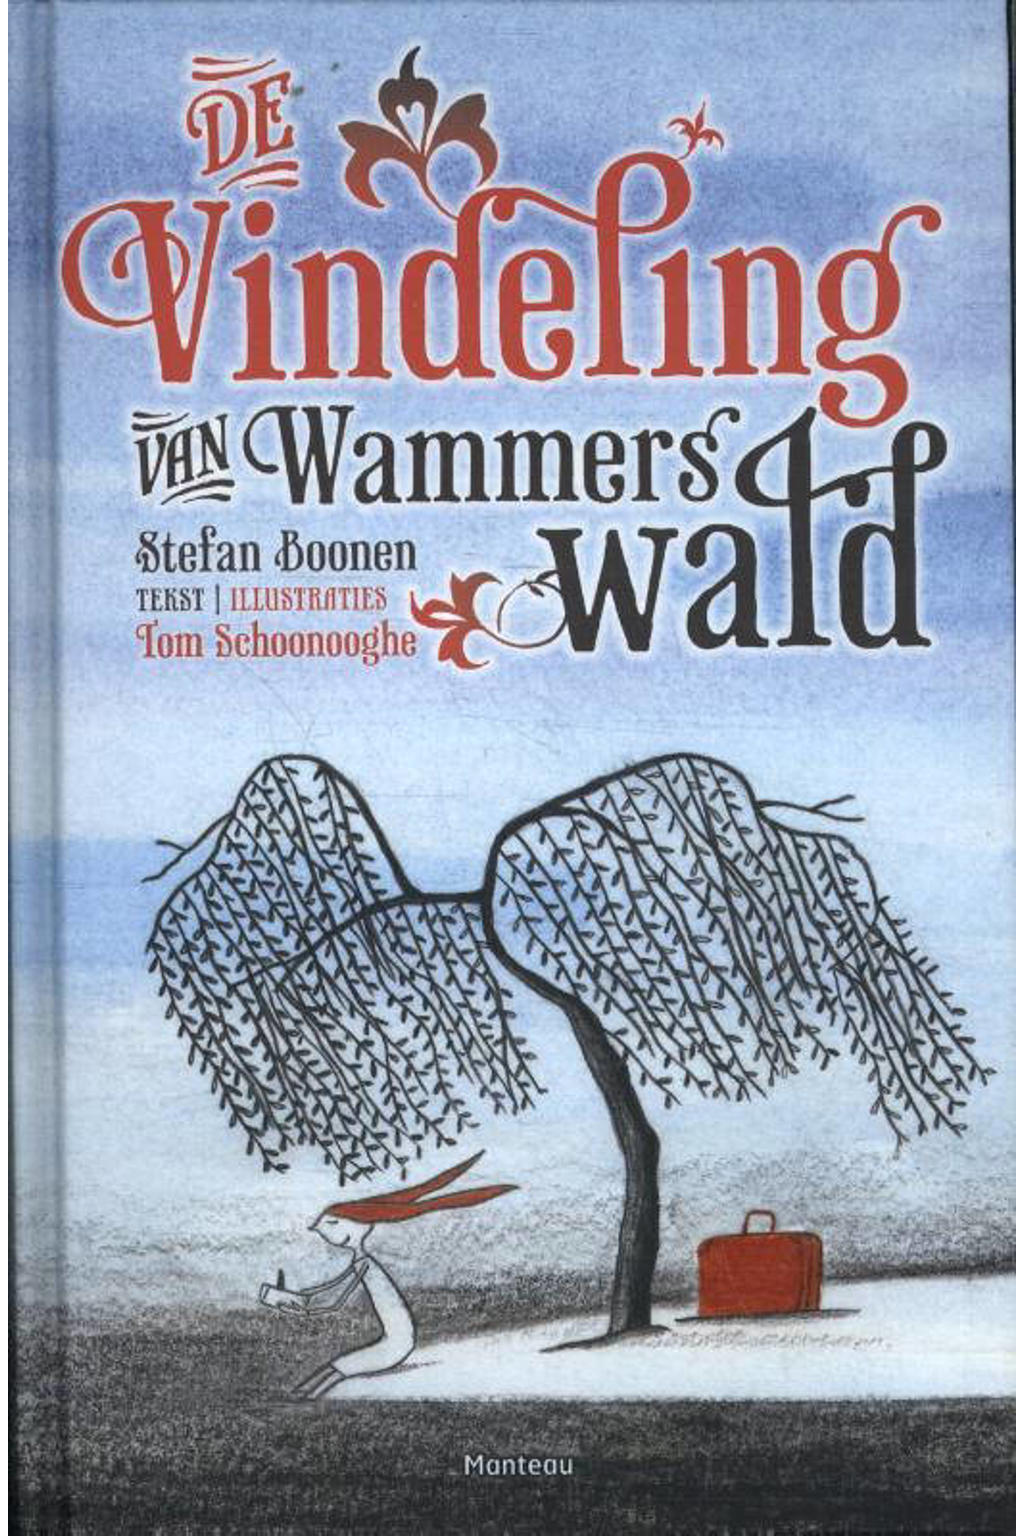 De Vindeling van Wammerswald - Stefan Boonen